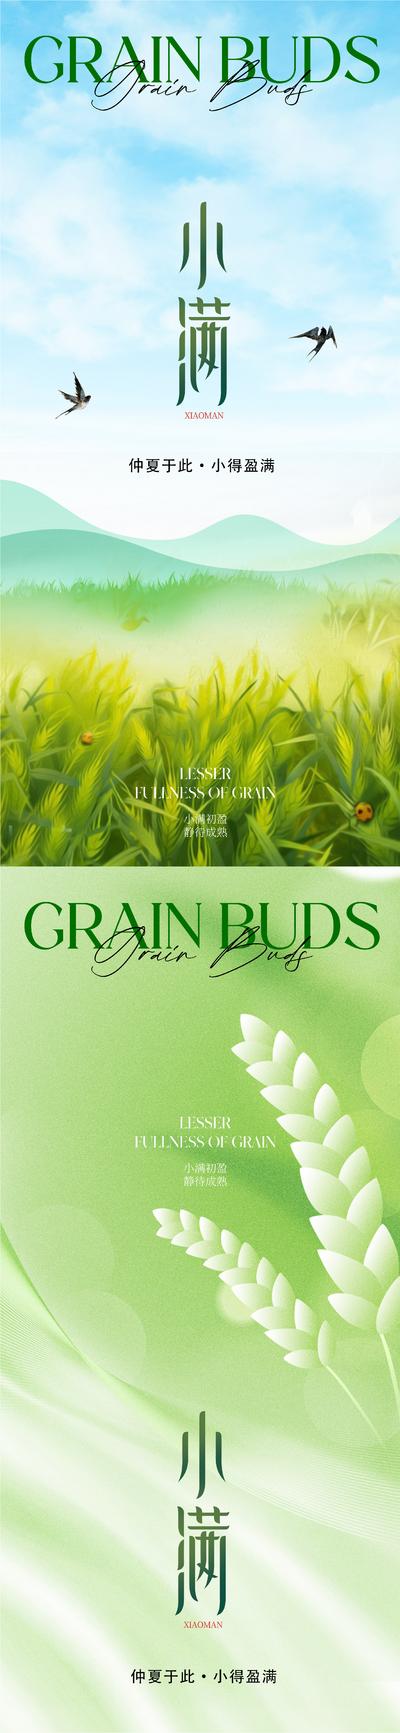 南门网 广告 海报 地产 小满 节气 质感 美业 绿色 麦穗 麦子 谷物 农作物 燕子 晴天 高级 清新 唯美 风景 品质